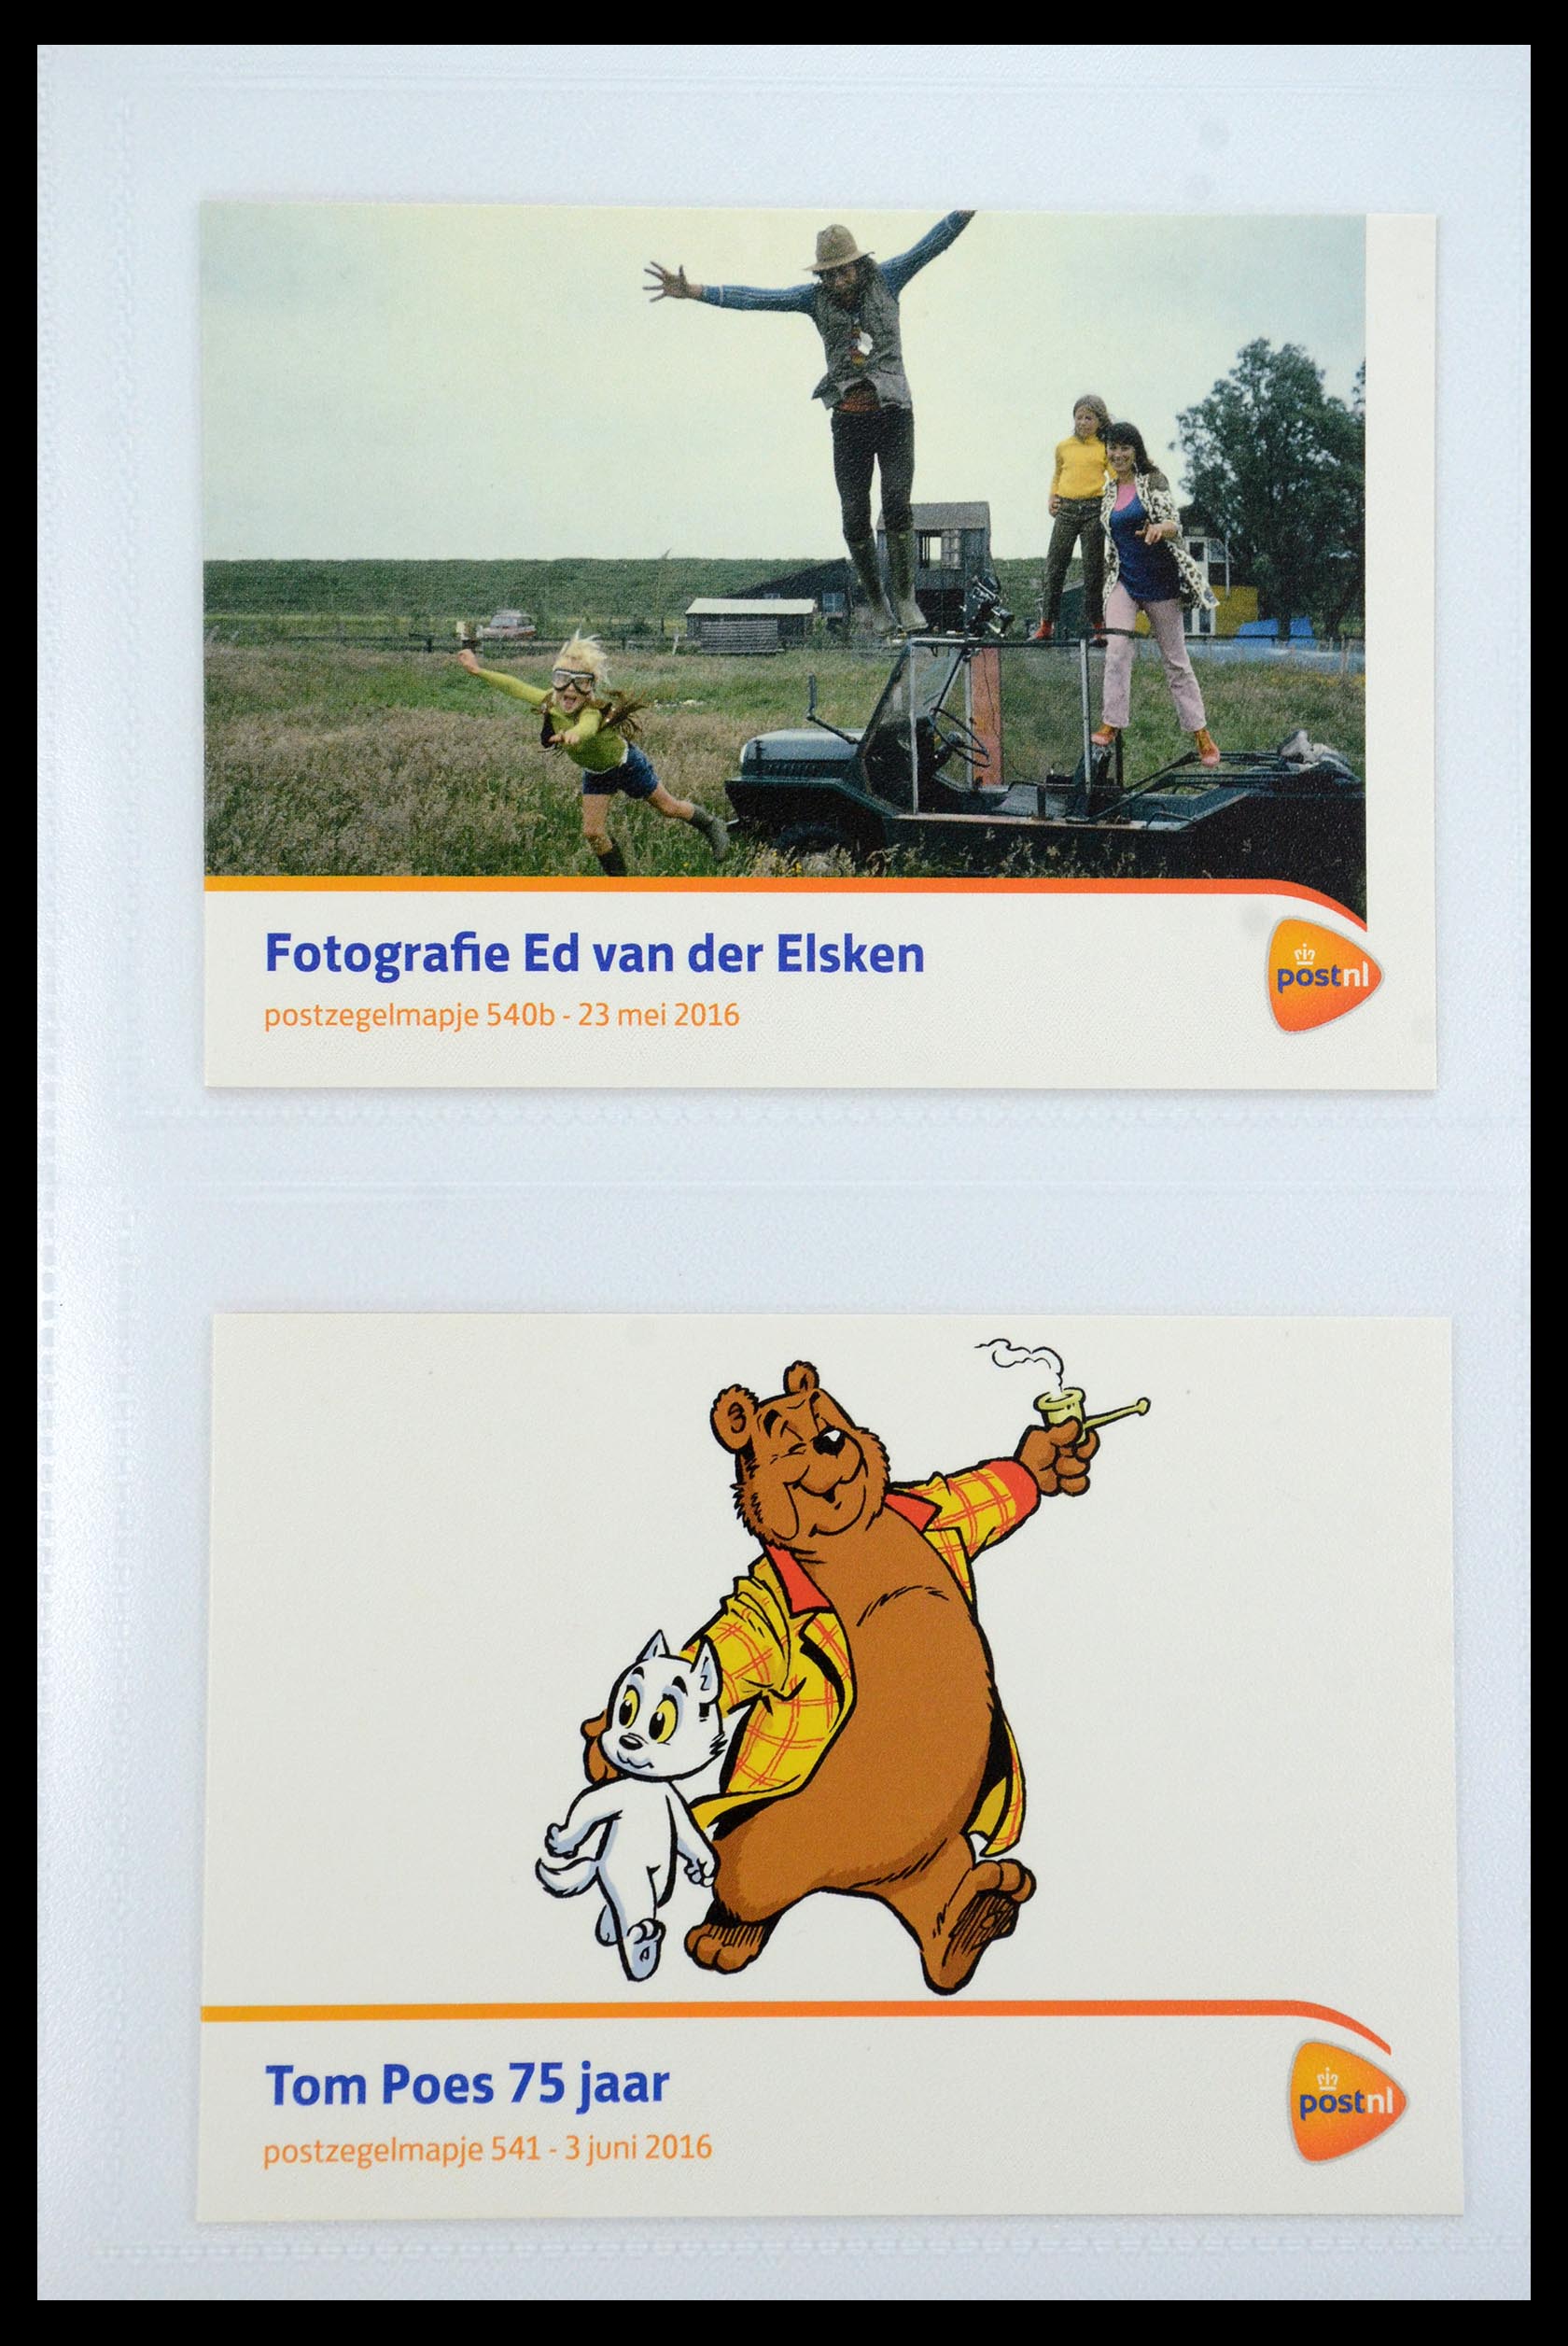 35947 322 - Stamp Collection 35947 Netherlands PTT presentation packs 1982-2019!